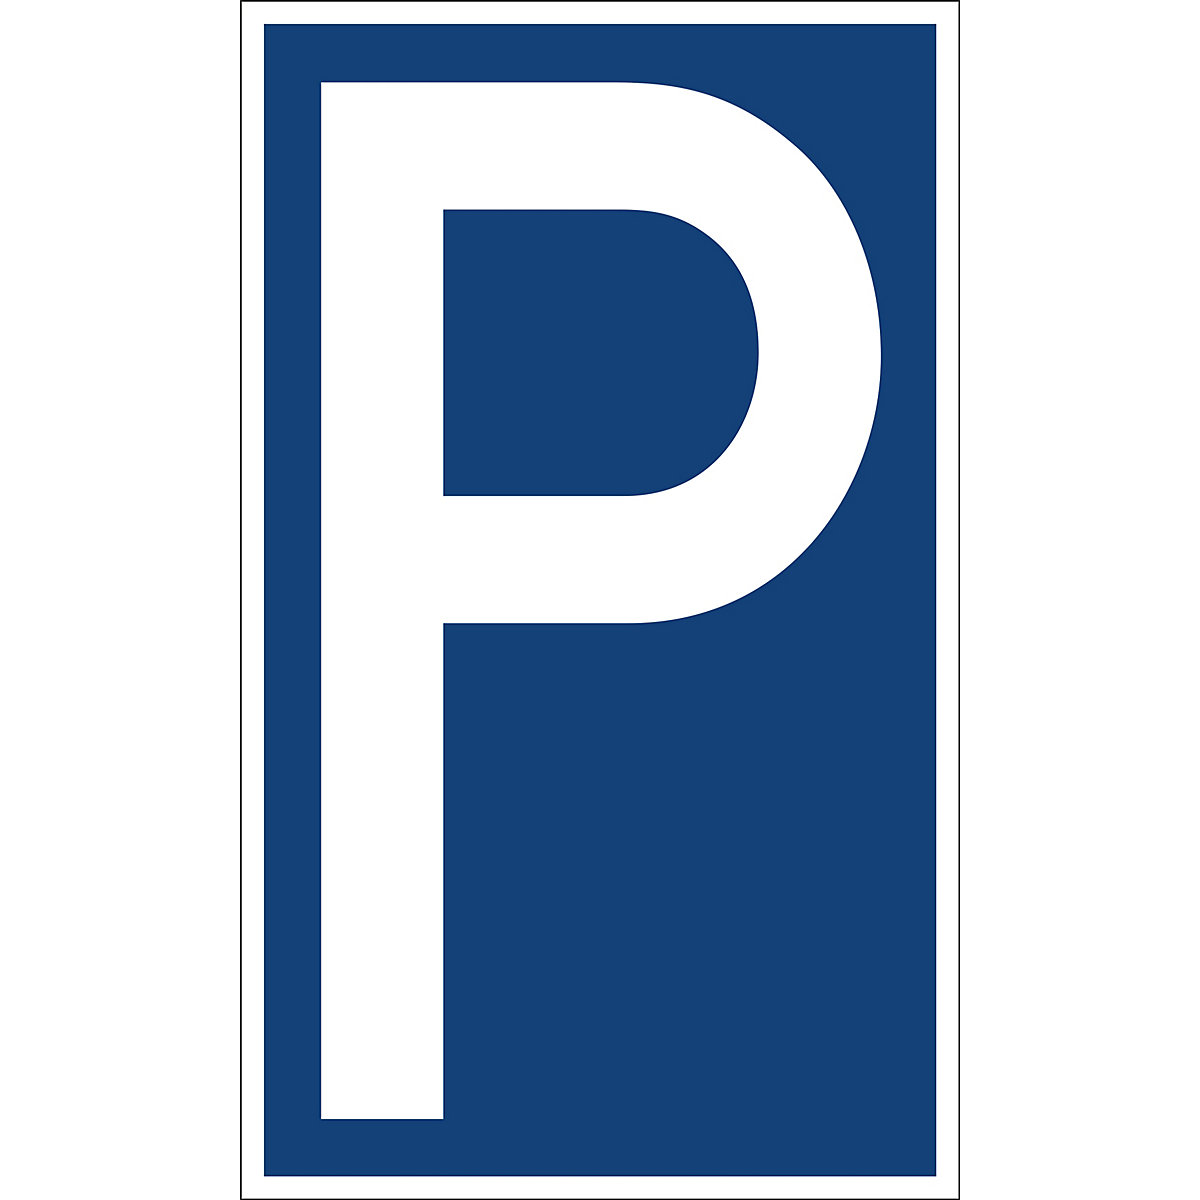 Parkplatzkennzeichen, Kunststoff: P / Nur Elektrofahrzeuge